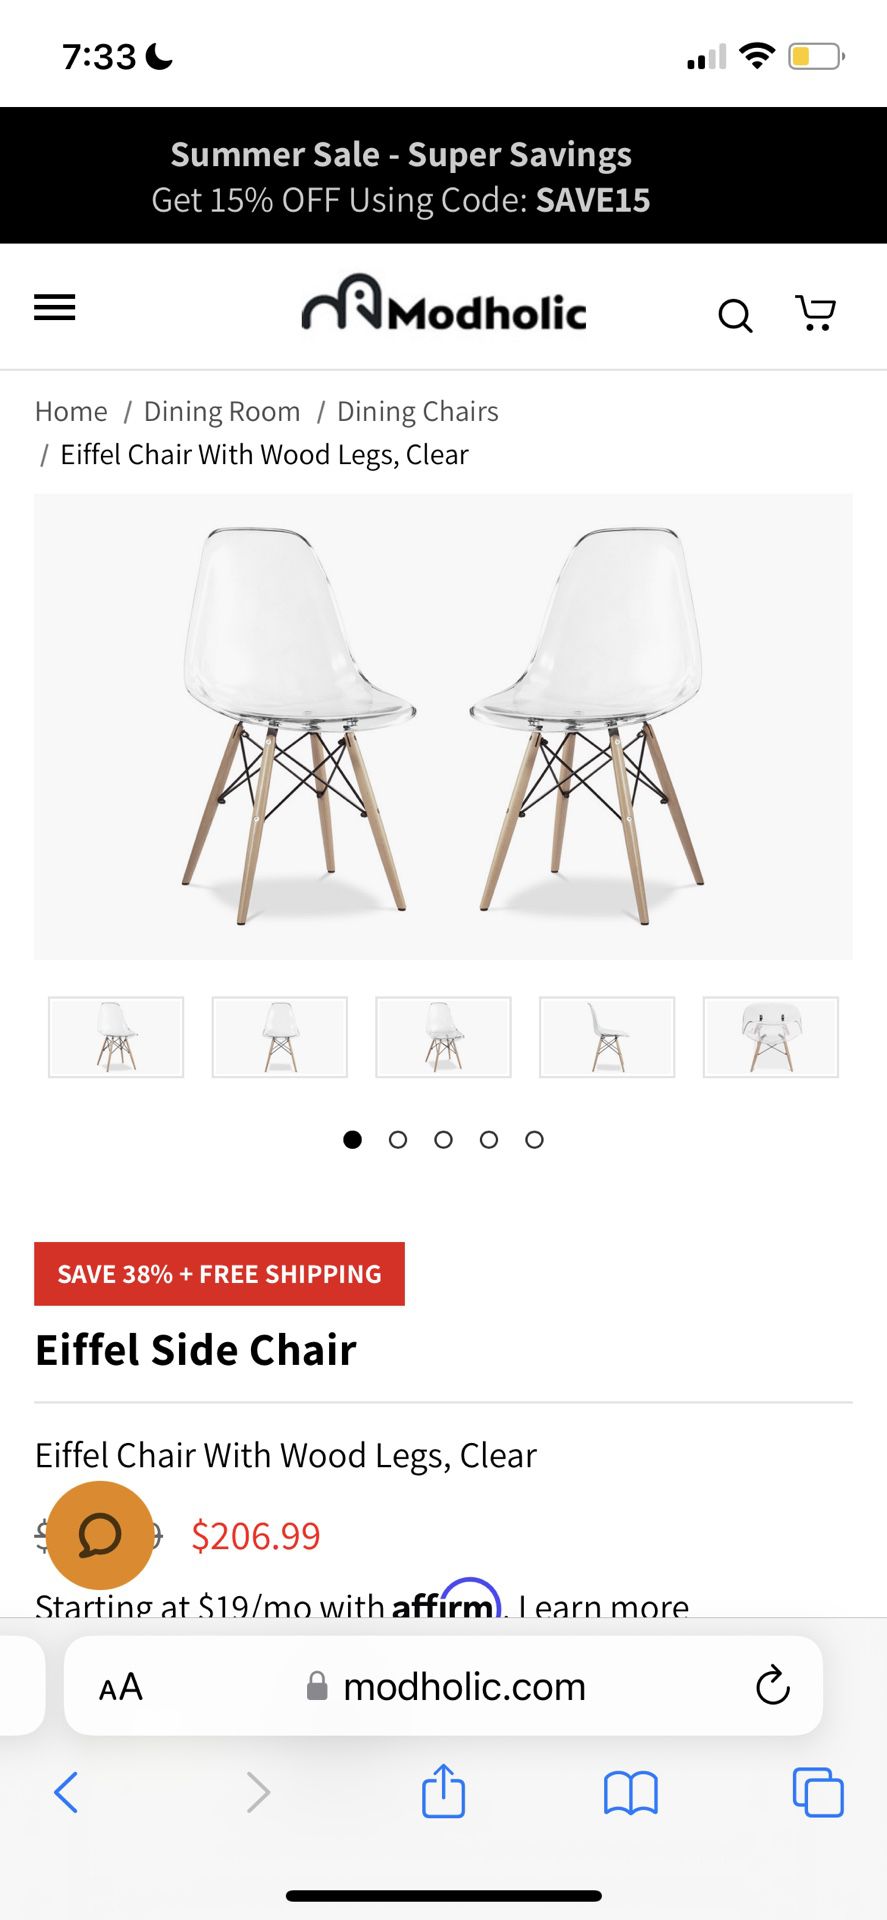 2 Acrylic Chairs